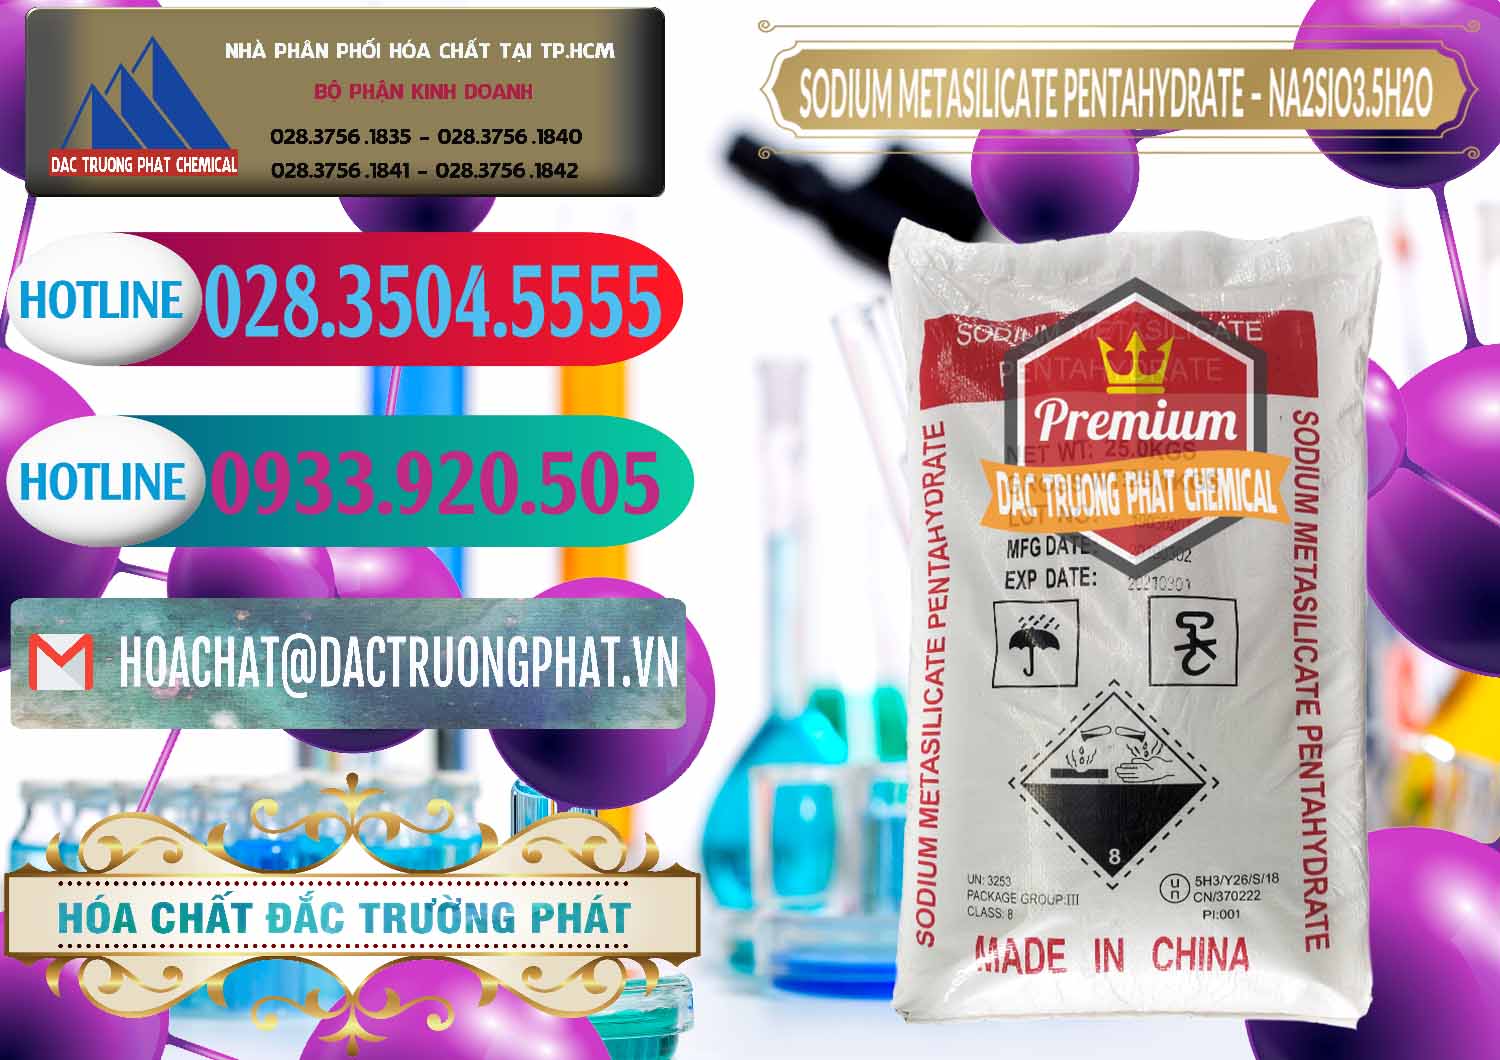 Công ty chuyên cung cấp ( bán ) Sodium Metasilicate Pentahydrate – Silicate Bột Trung Quốc China - 0147 - Công ty phân phối _ cung cấp hóa chất tại TP.HCM - truongphat.vn